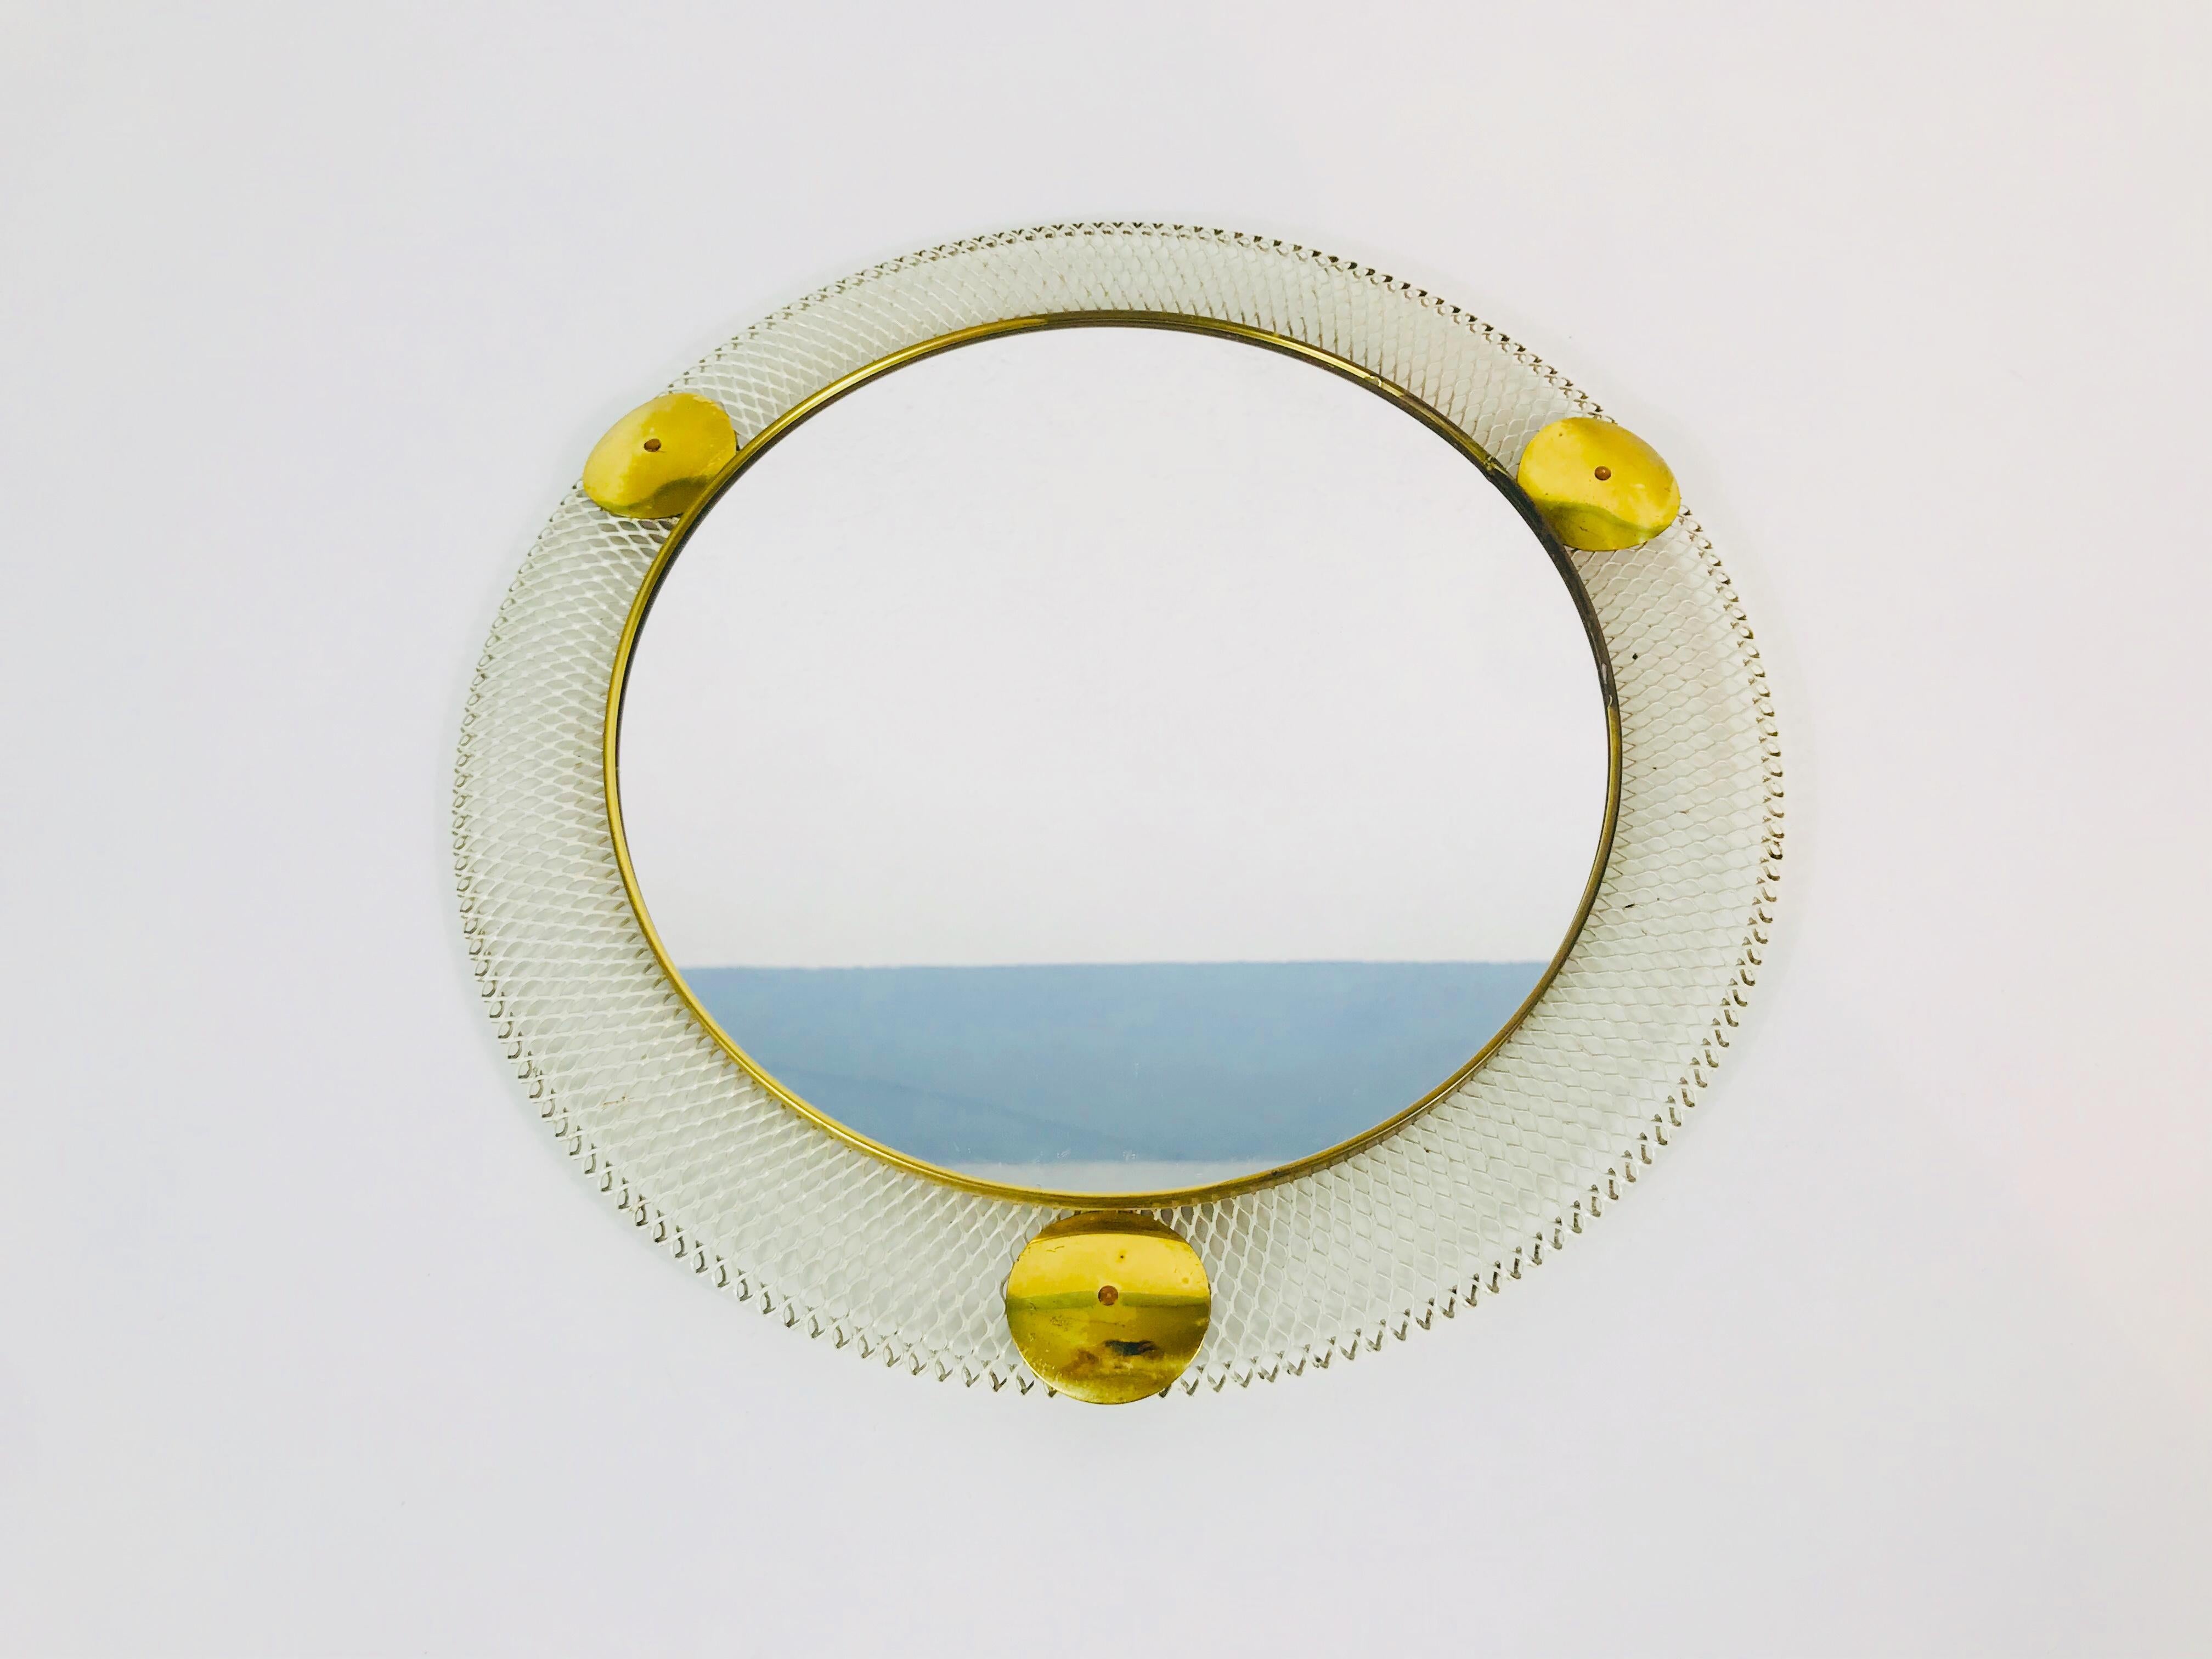 Miroir mural rond des années 1960 fabriqué en Italie. Le miroir a un design circulaire en métal. Le miroir est en bon état vintage.